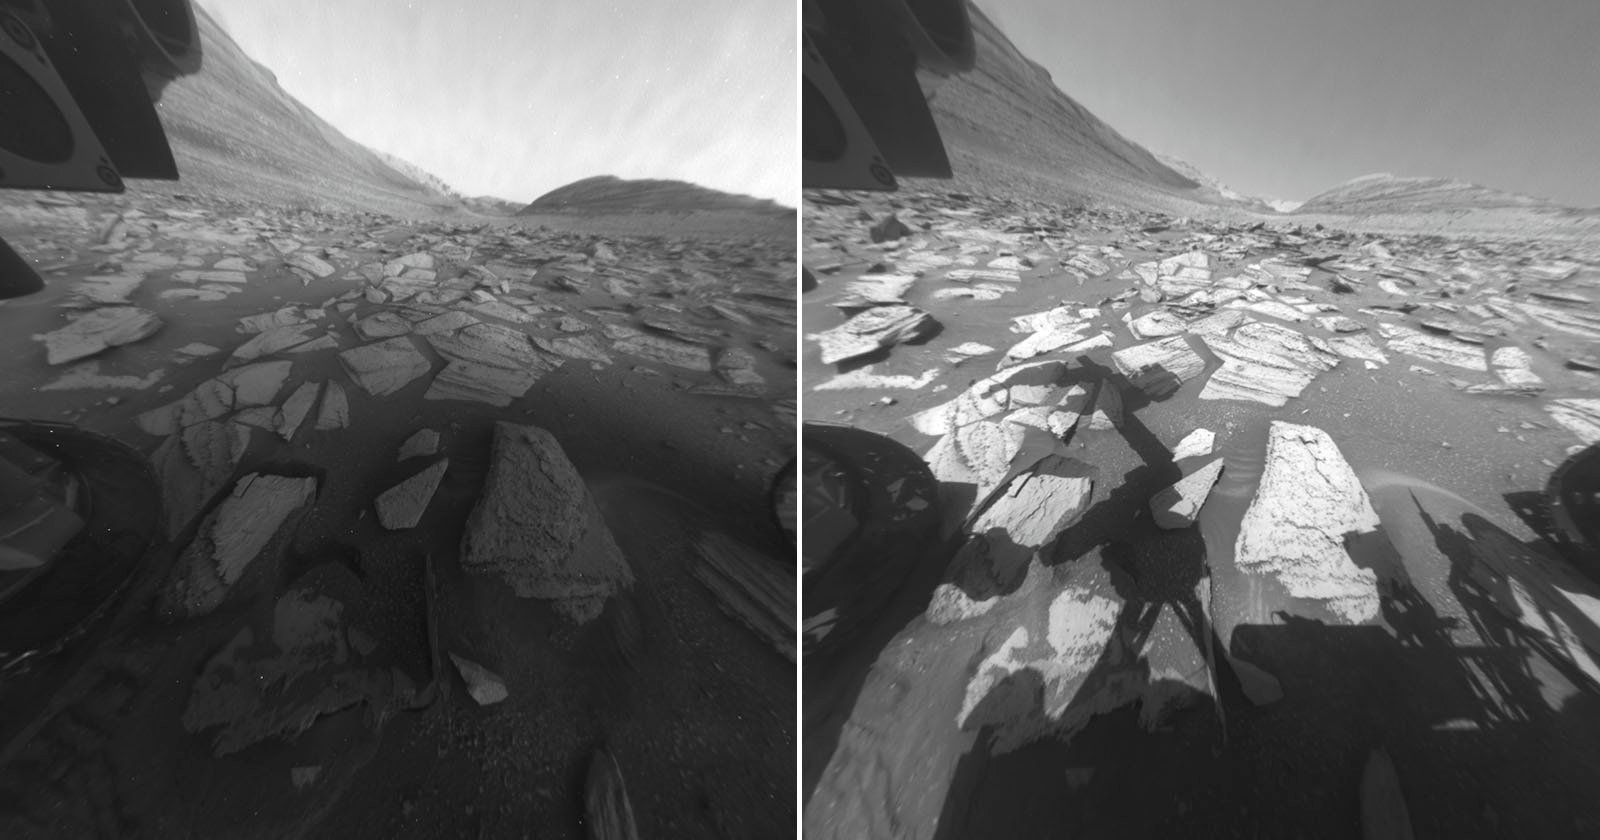 Curiosity Captures a Day on Mars